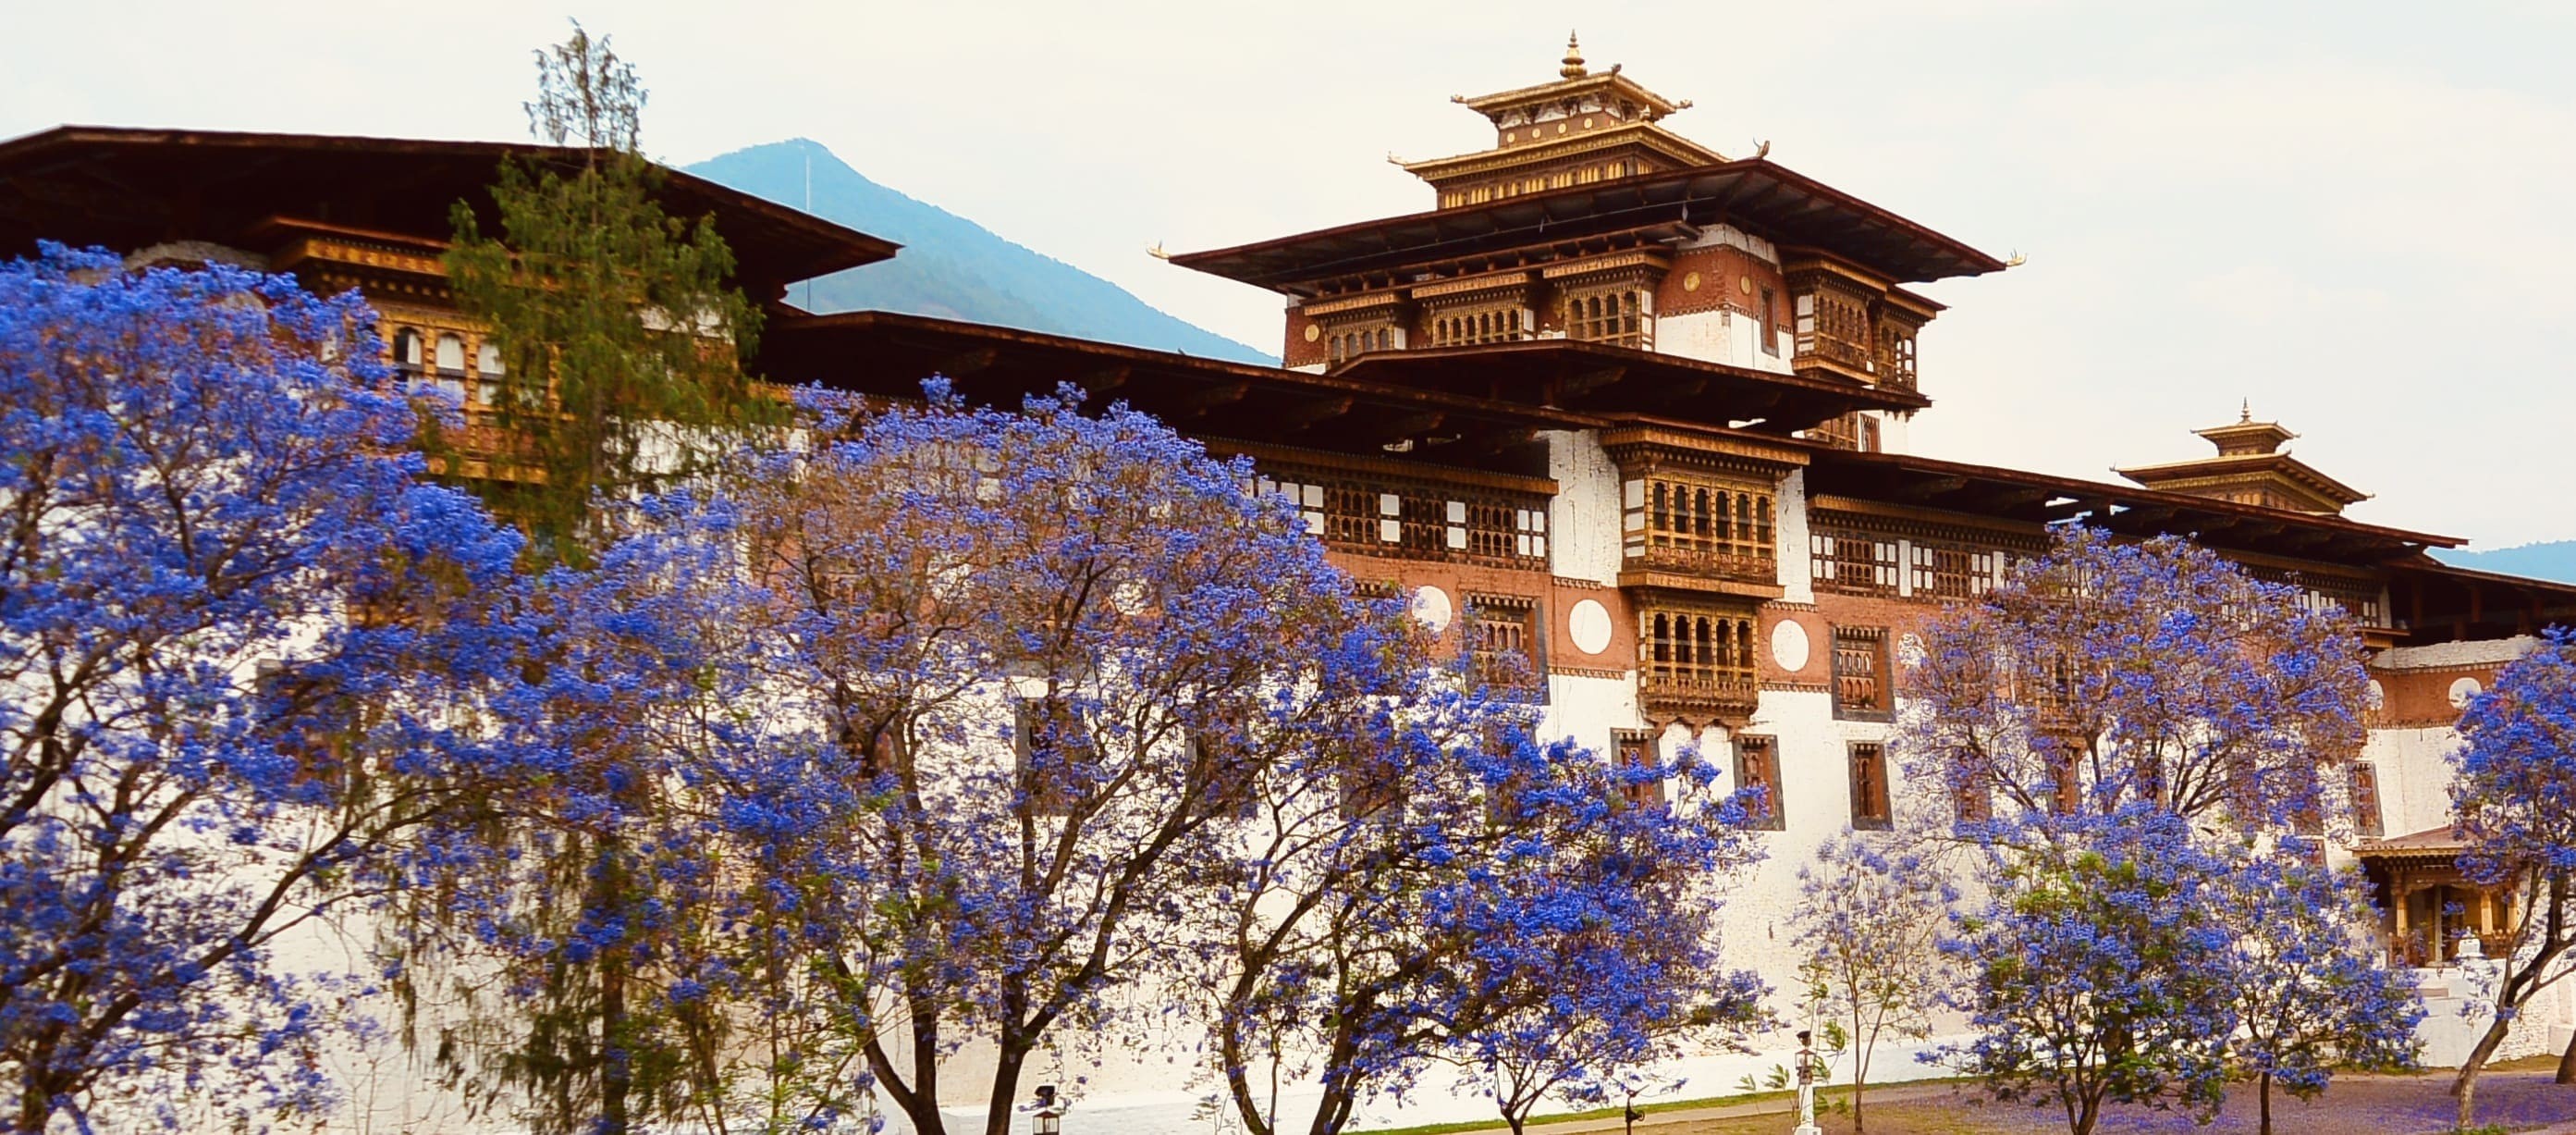 Bhutan_Hotels_Main-1639587480.jpeg